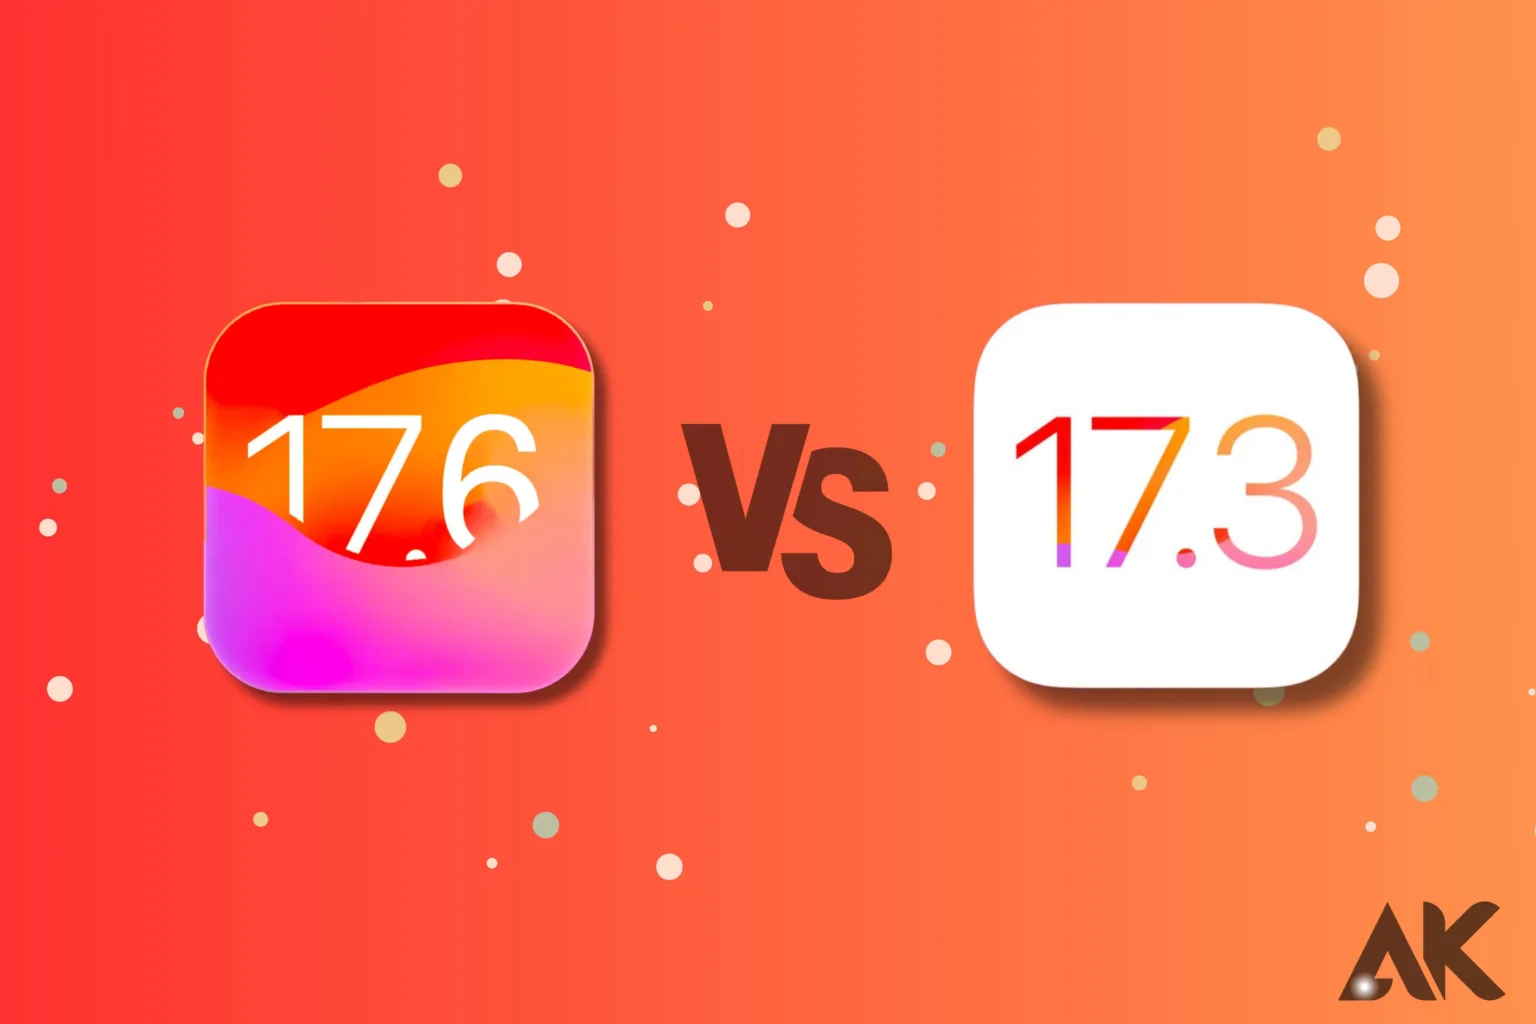 iOS 17.6 vs iOS 17.3